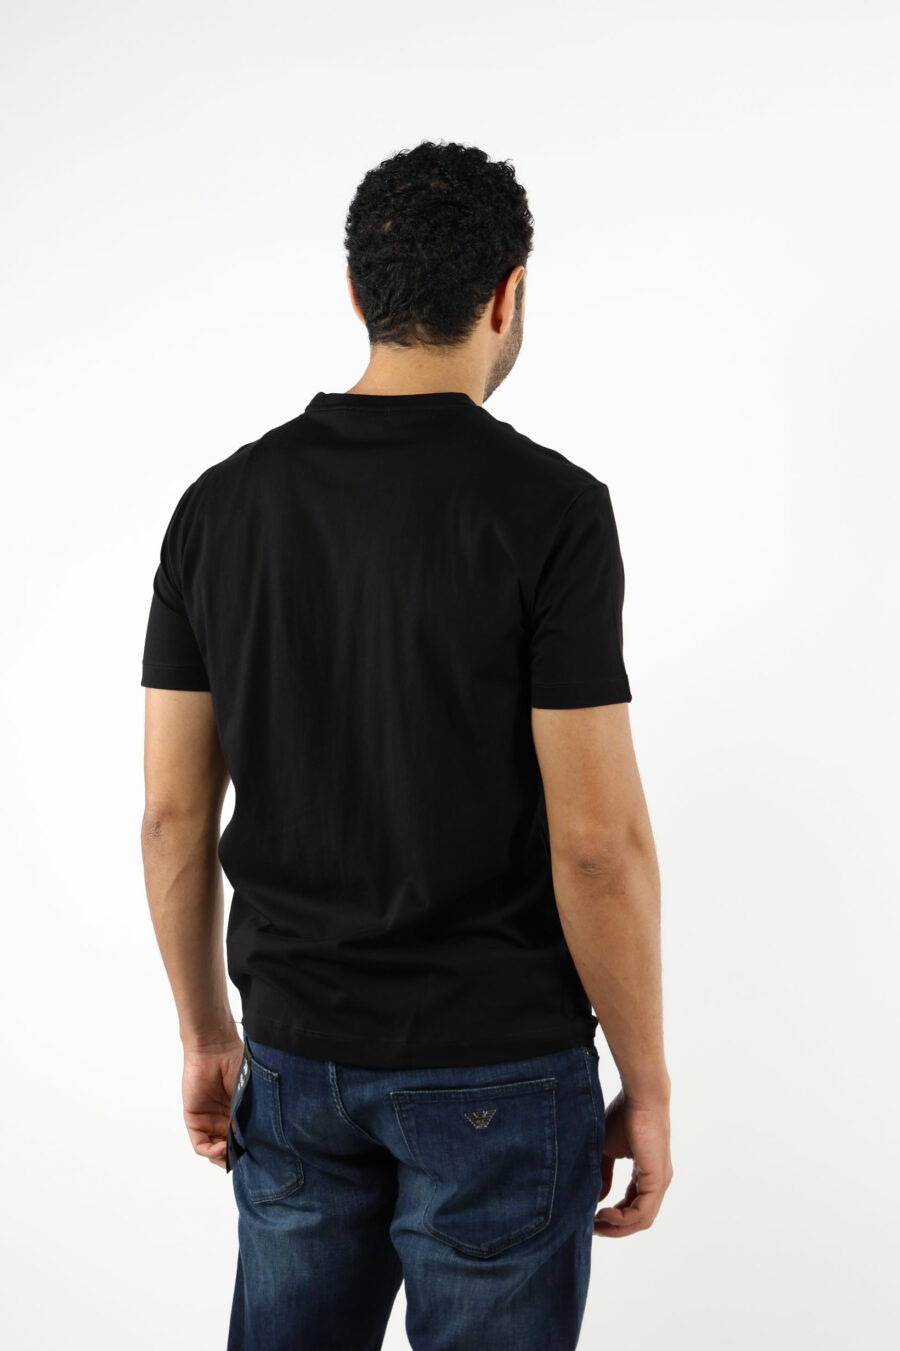 Schwarzes T-Shirt mit schwarzem "lux identity" Minilogo auf Goldplatte - 110815